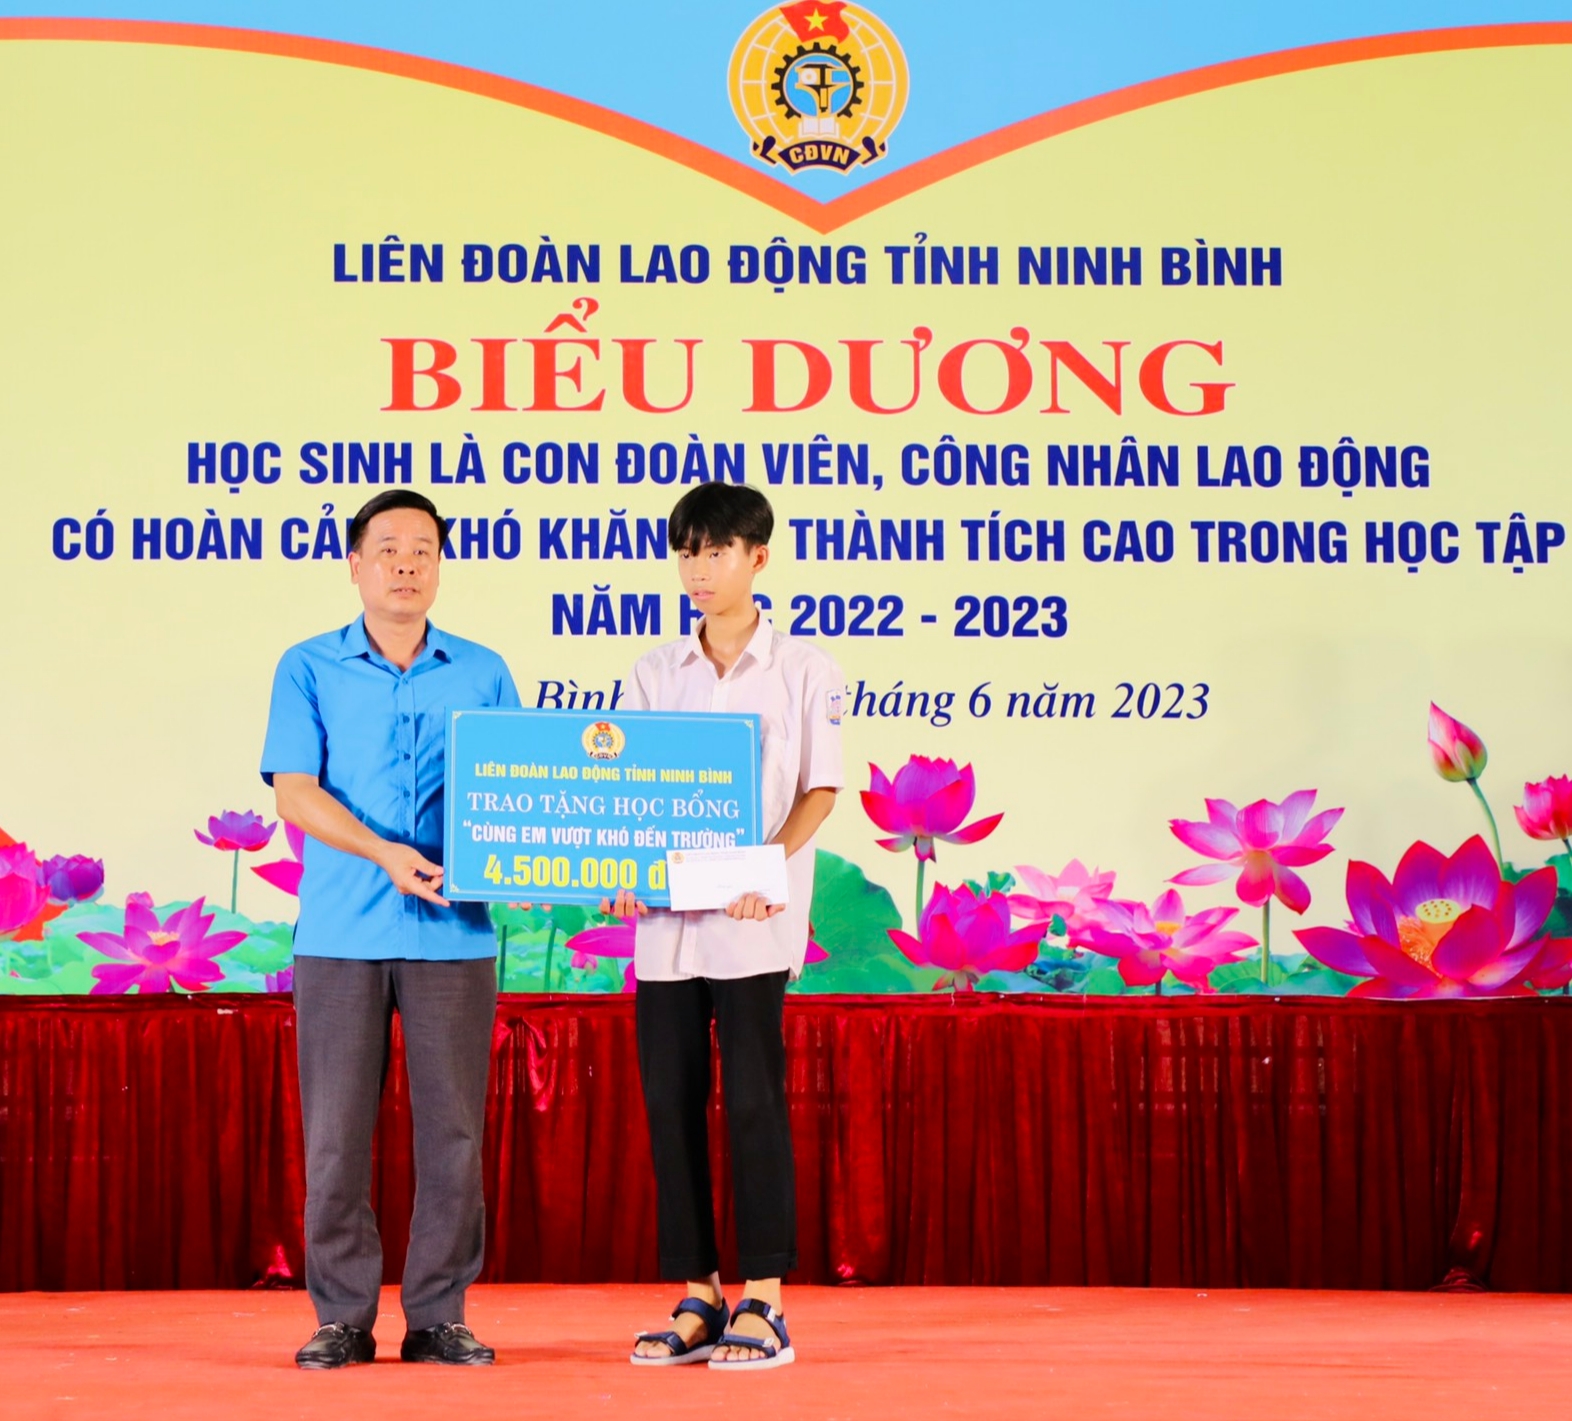 Ông Dương Đức Khanh, Chủ tịch LĐLĐ tỉnh Ninh Bình trao học bỗng “Cùng em vượt khó đến trường” cho học sinh